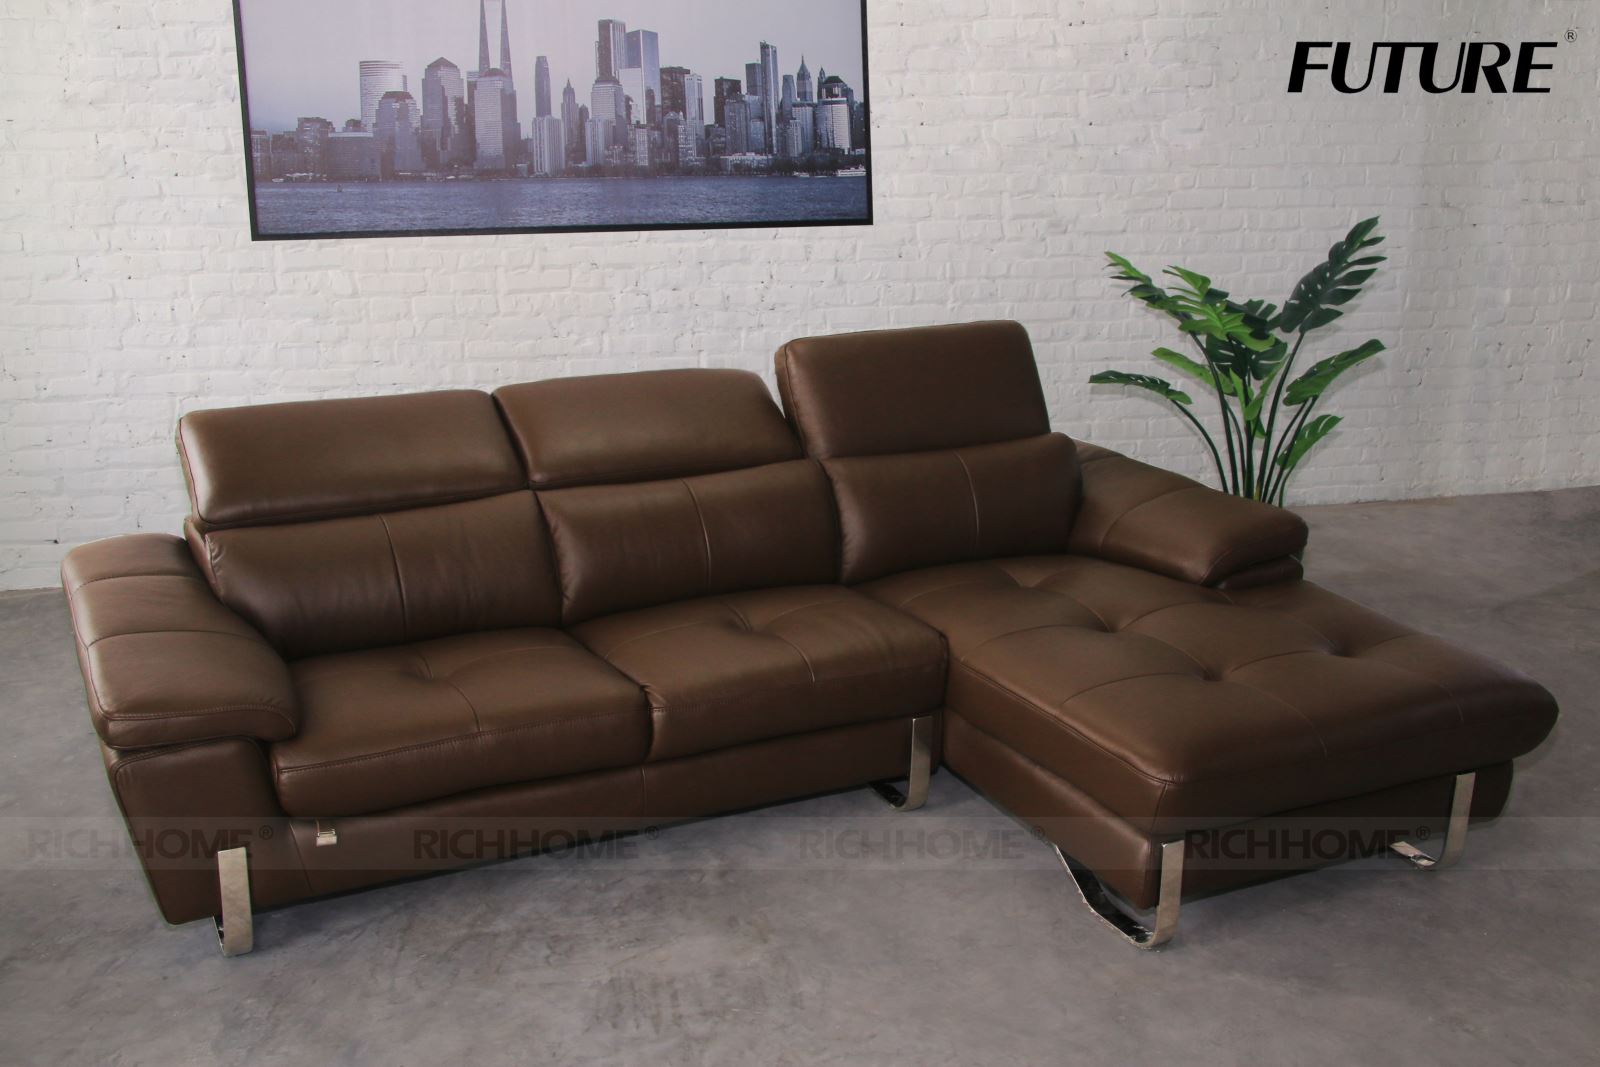 CHẤT LỪ 10 mẫu sofa nhập khẩu phong cách Châu Âu hiện đại - Ảnh 5